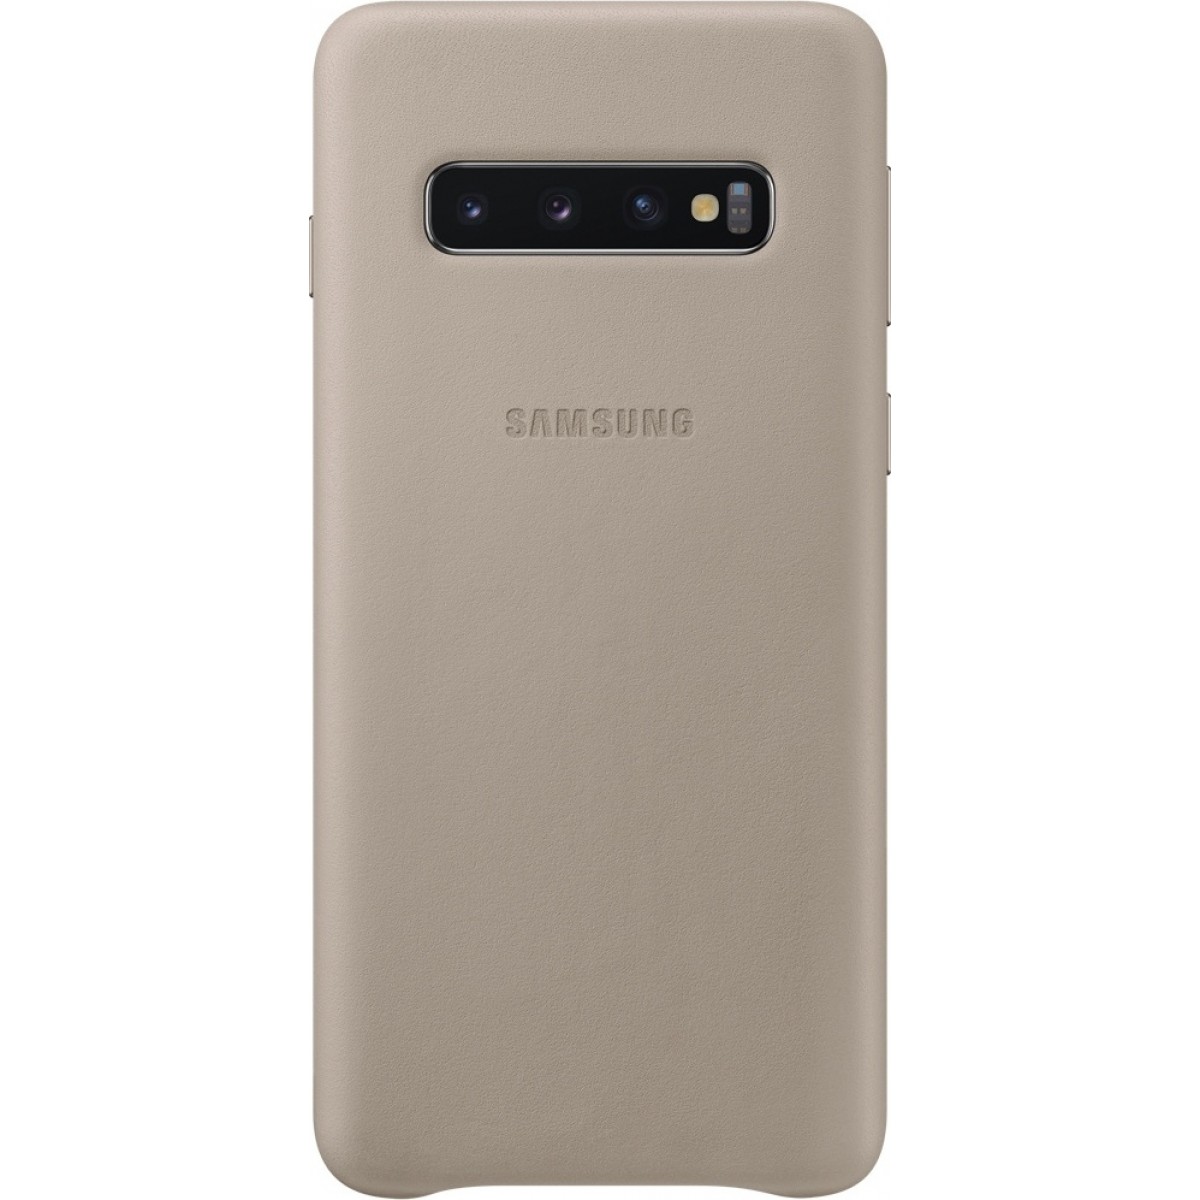 Θηκη για Samsung Galaxy S10 Leather Cover Grey Original EF-VG973LJE